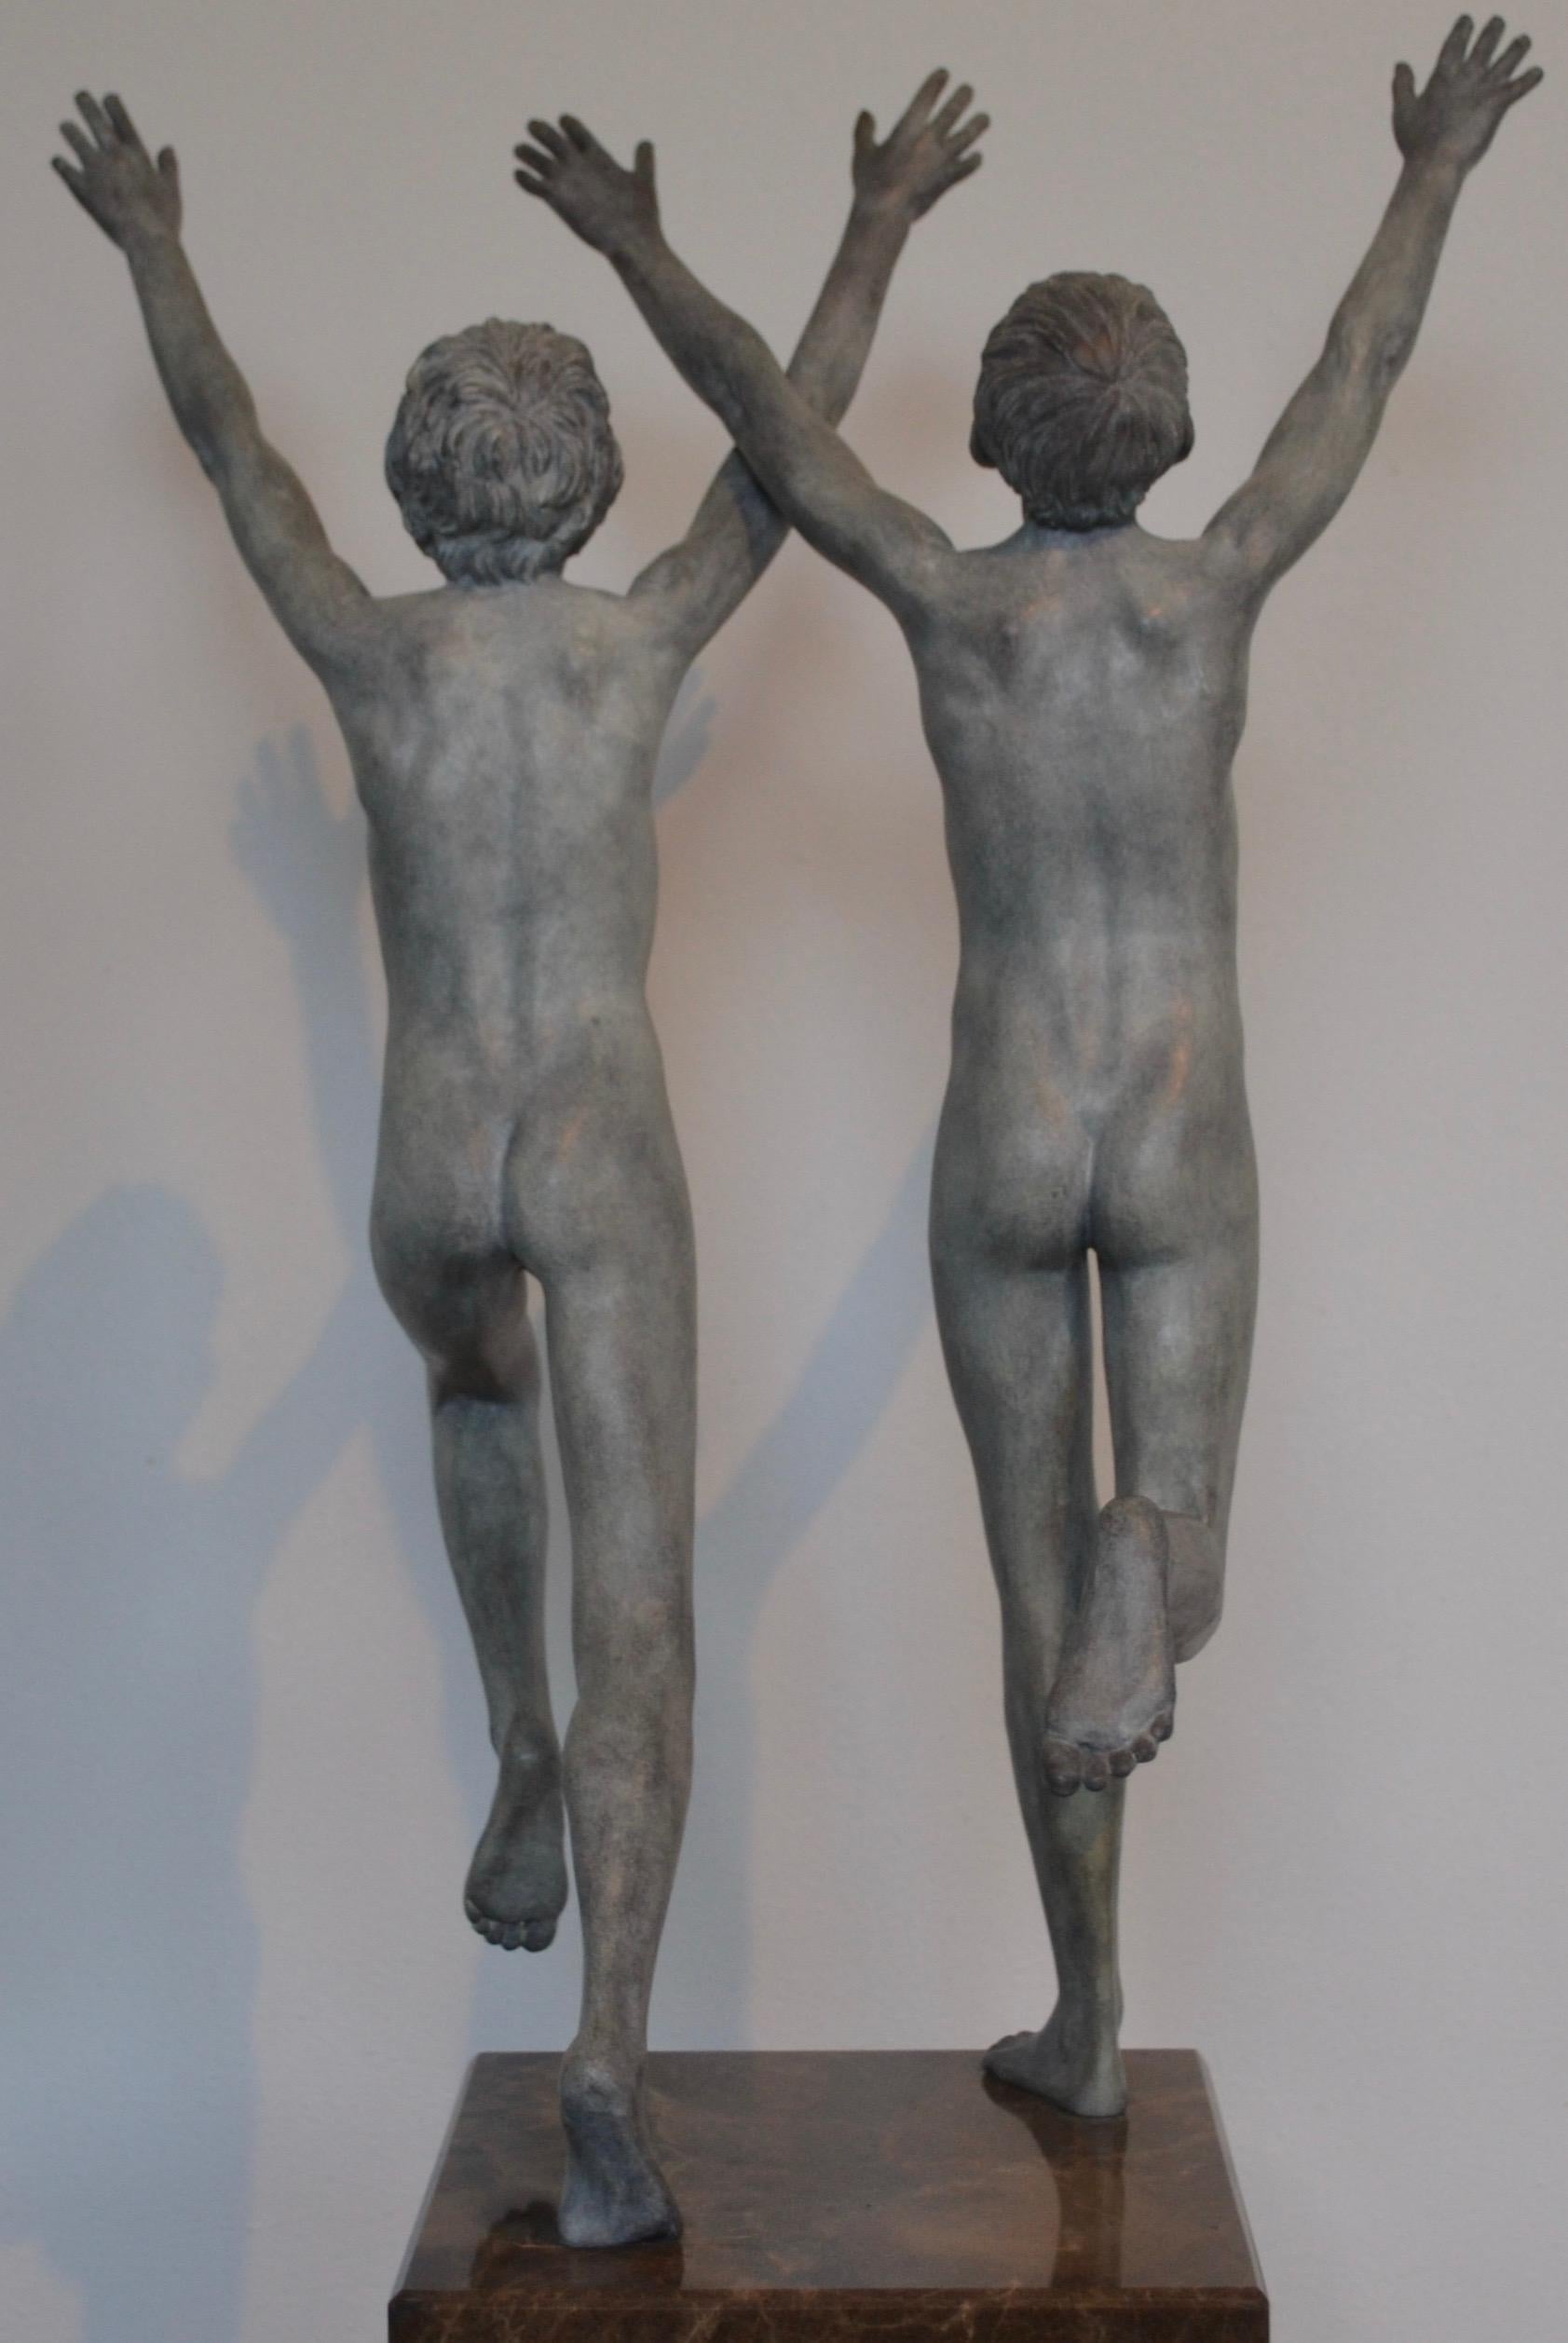 Cursus – zeitgenössische Bronzeskulptur zweier nackter laufender Jungen aus dem 21. Jahrhundert – Sculpture von Wim van der Kant